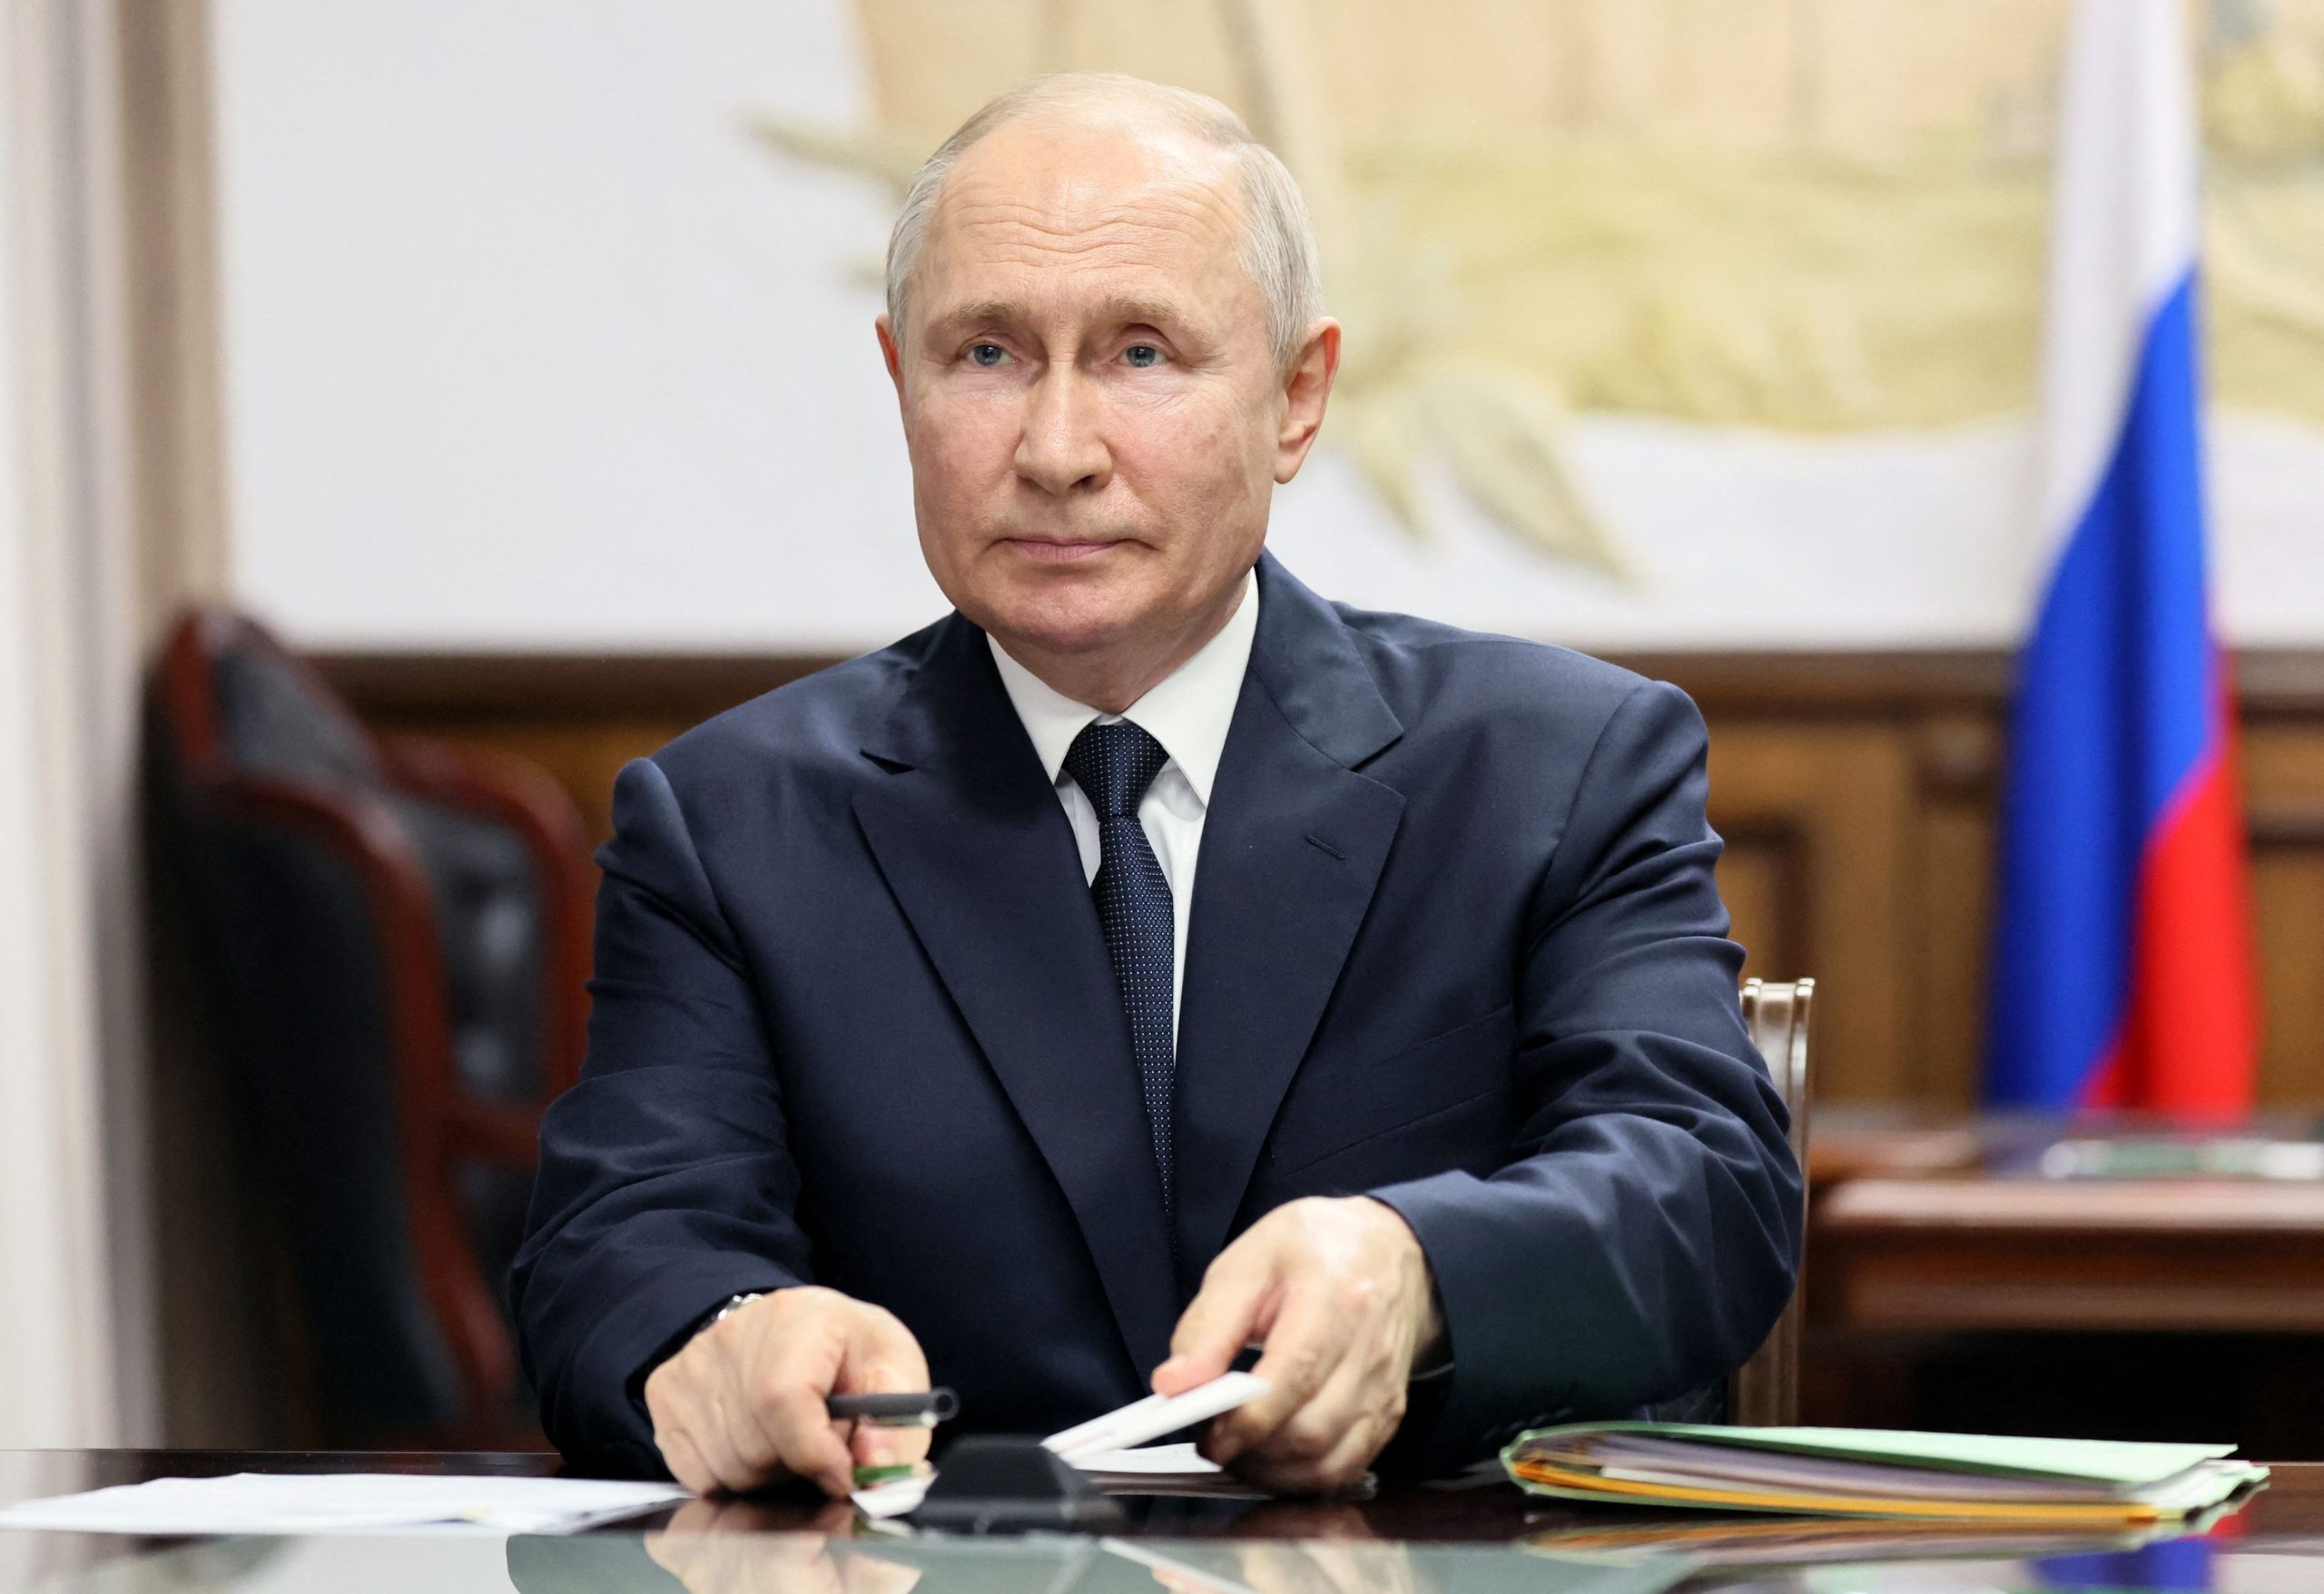 Β.Πούτιν: «Παρακολουθούμε με ανησυχία τι συμβαίνει στους Αγίους Τόπους – Κάποιοι θέλουν να εμπλακούν οι χώρες σε πόλεμο»